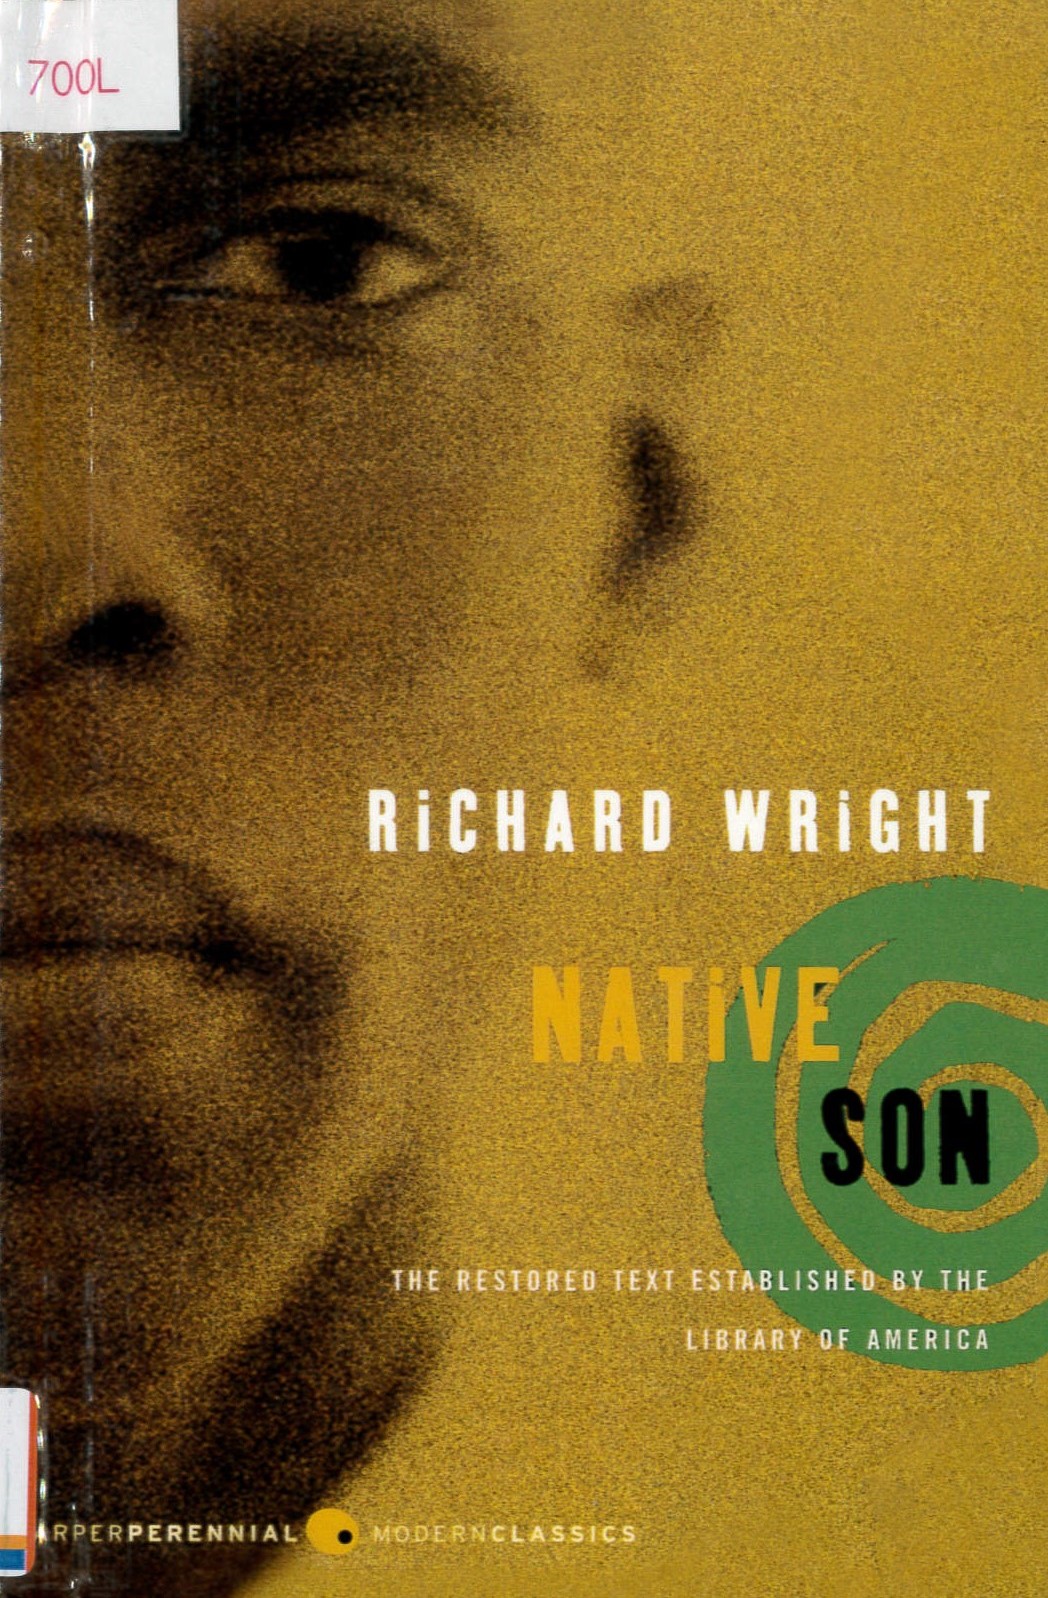 Native son /